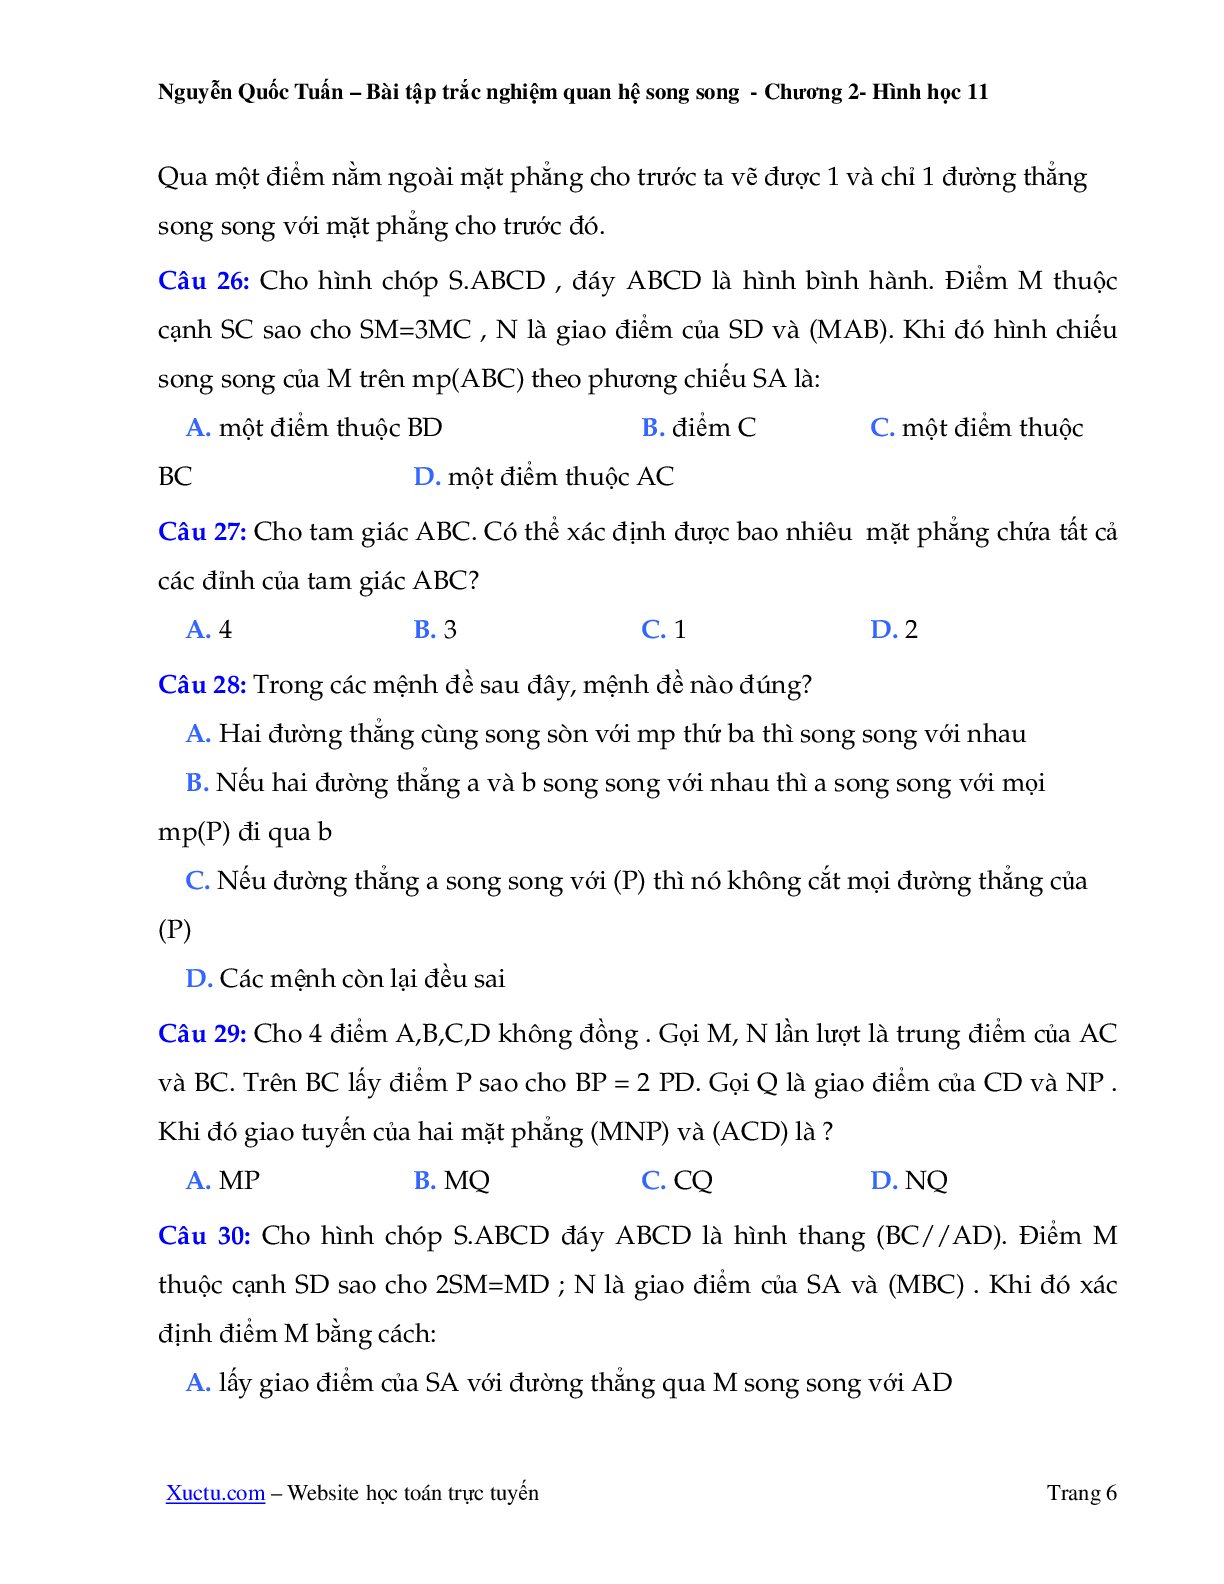 121 câu trắc nghiệm quan hệ song song 2023 (trang 6)